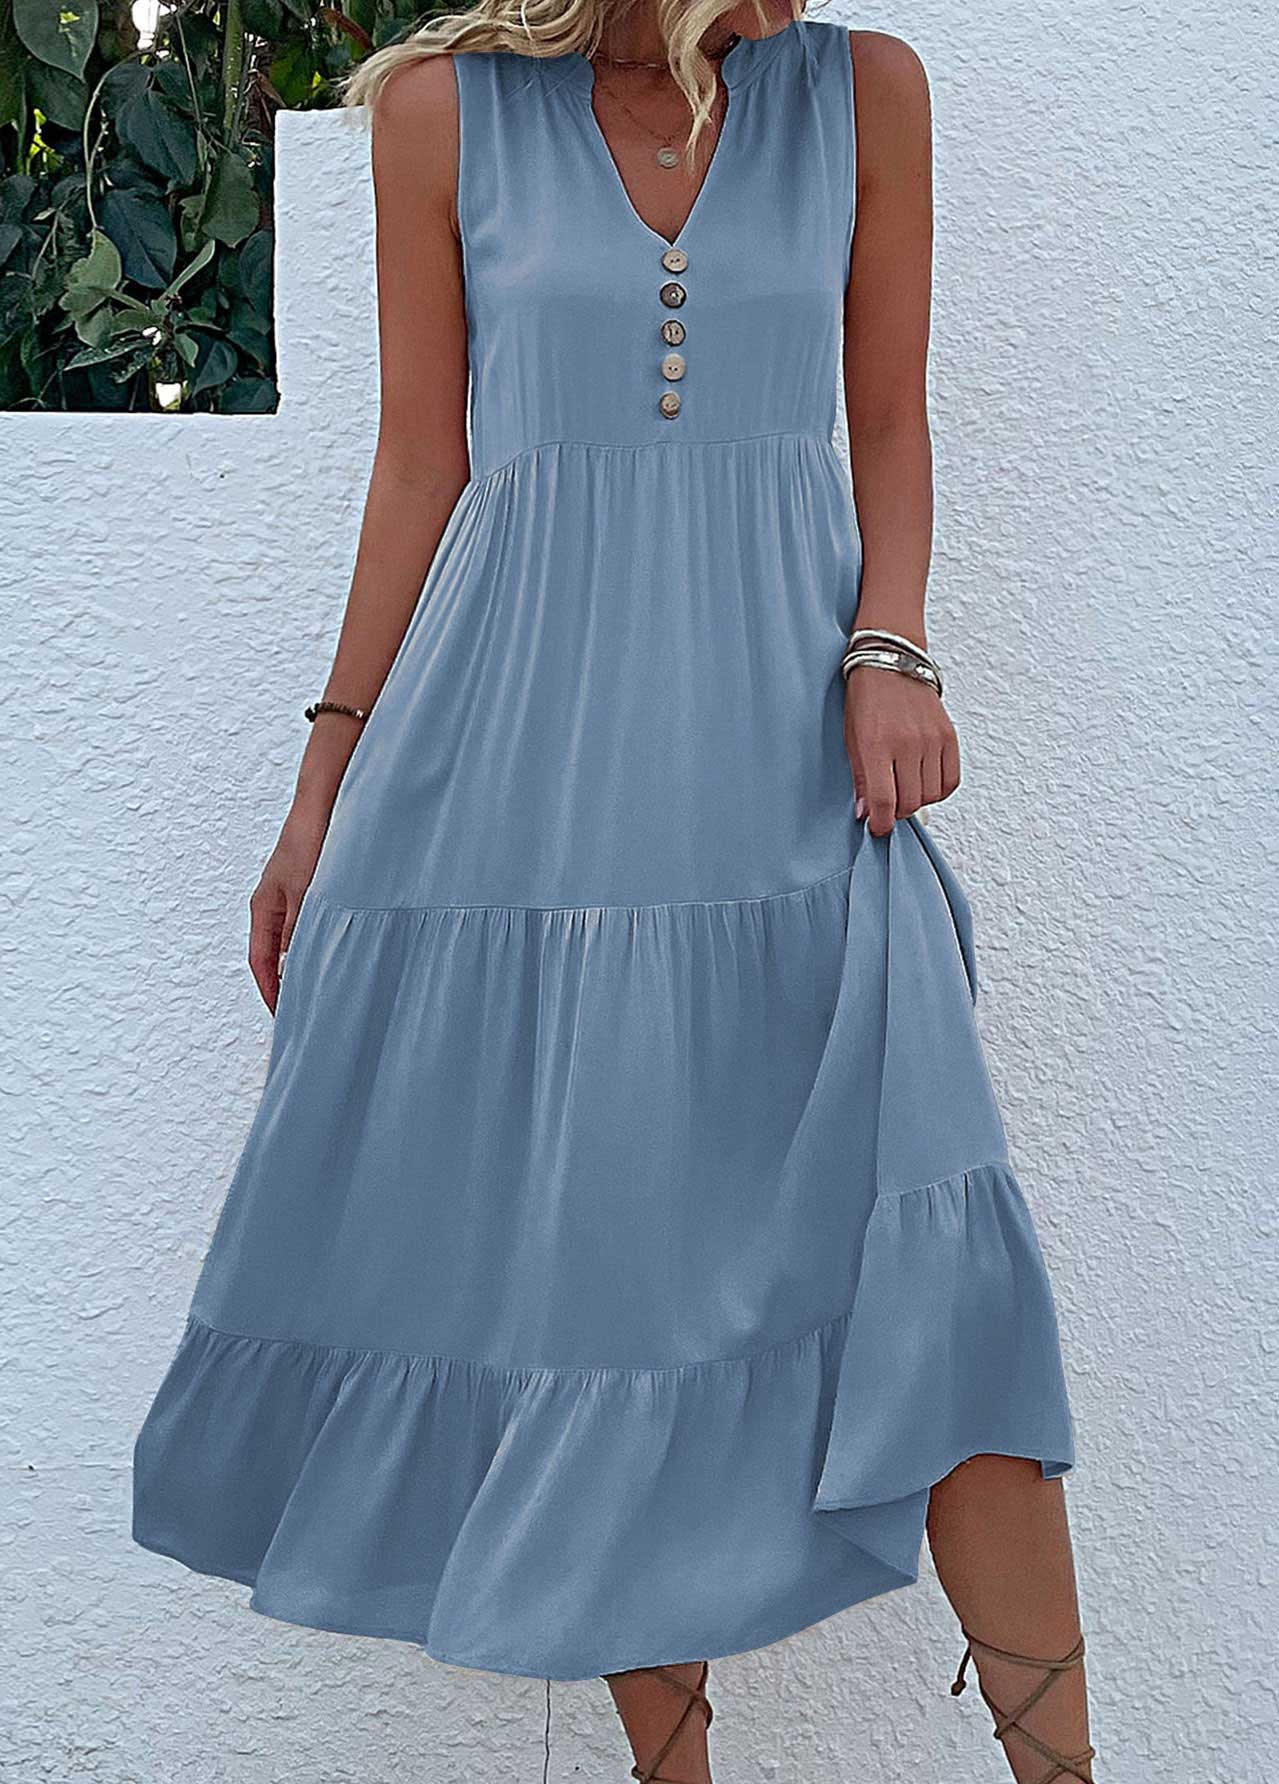 Dusty Blue Button A Line Sleeveless Dress